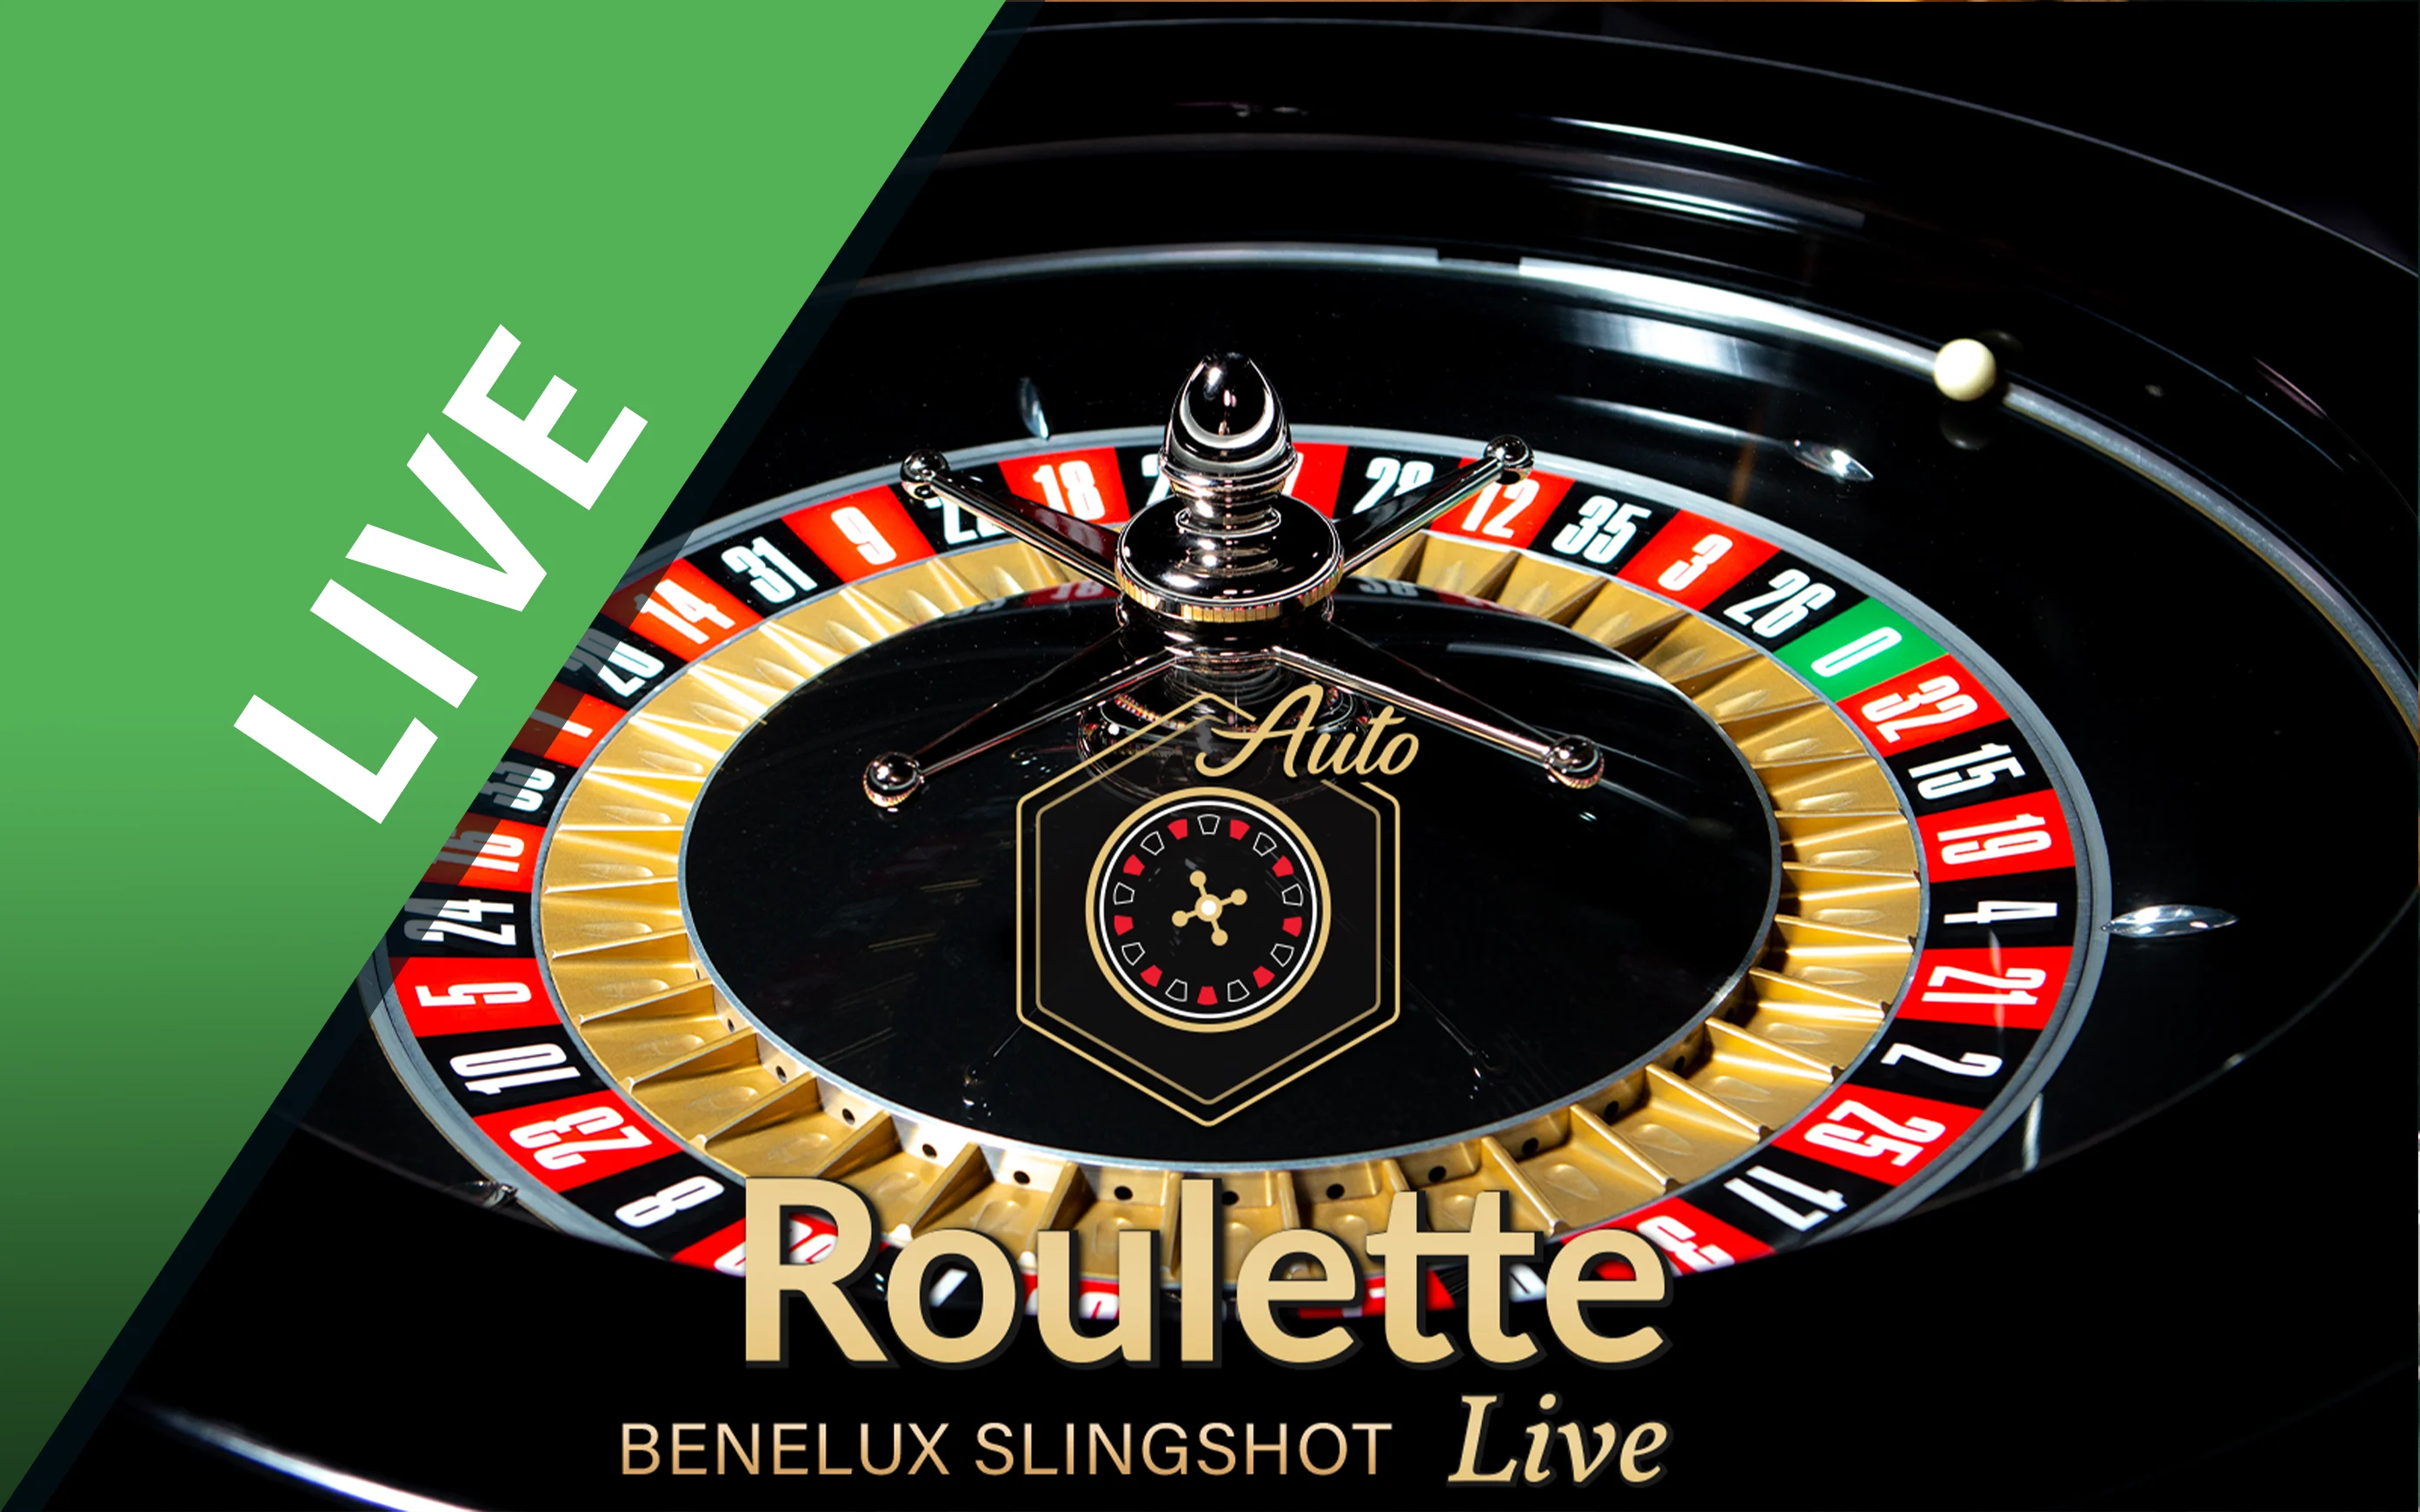 Zagraj w Benelux Slingshot Roulette w kasynie online Starcasino.be